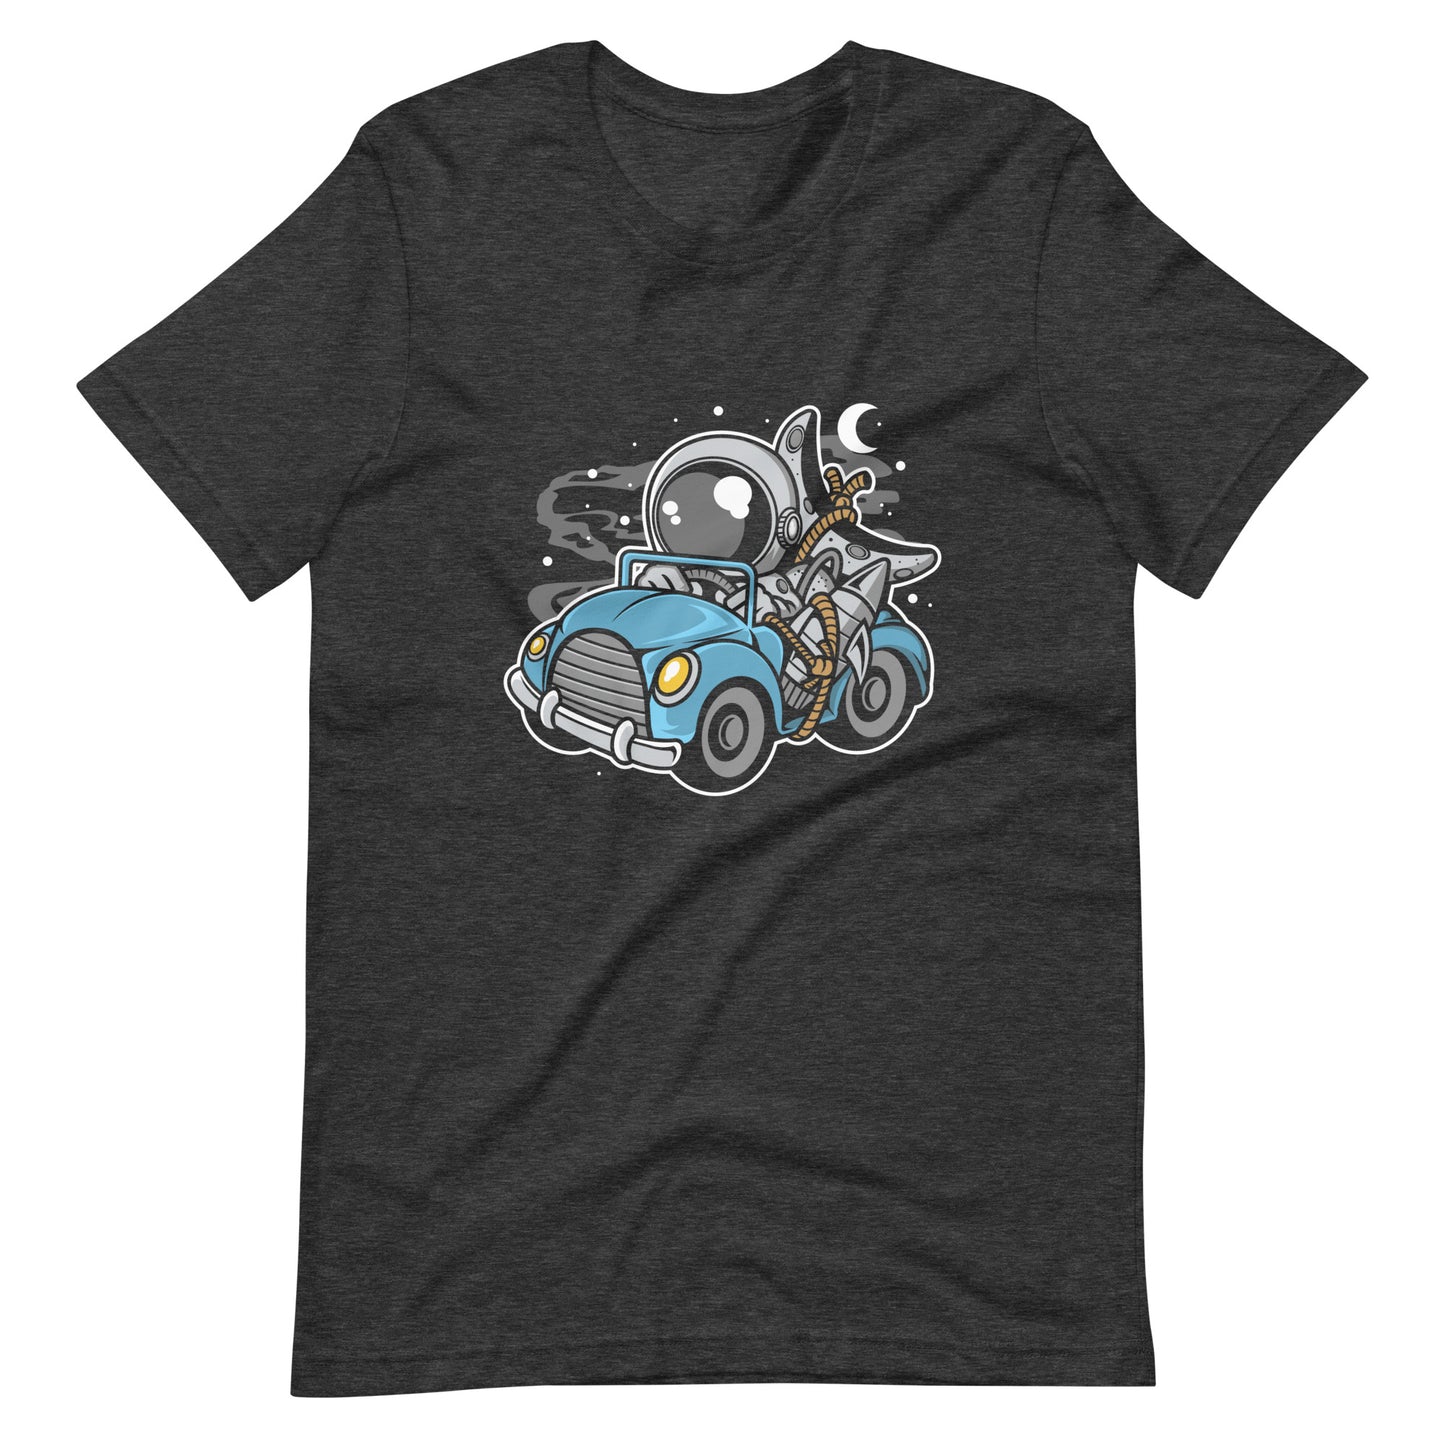 Astronaut Journey - Men's t-shirt - Dark Grey Heather Front